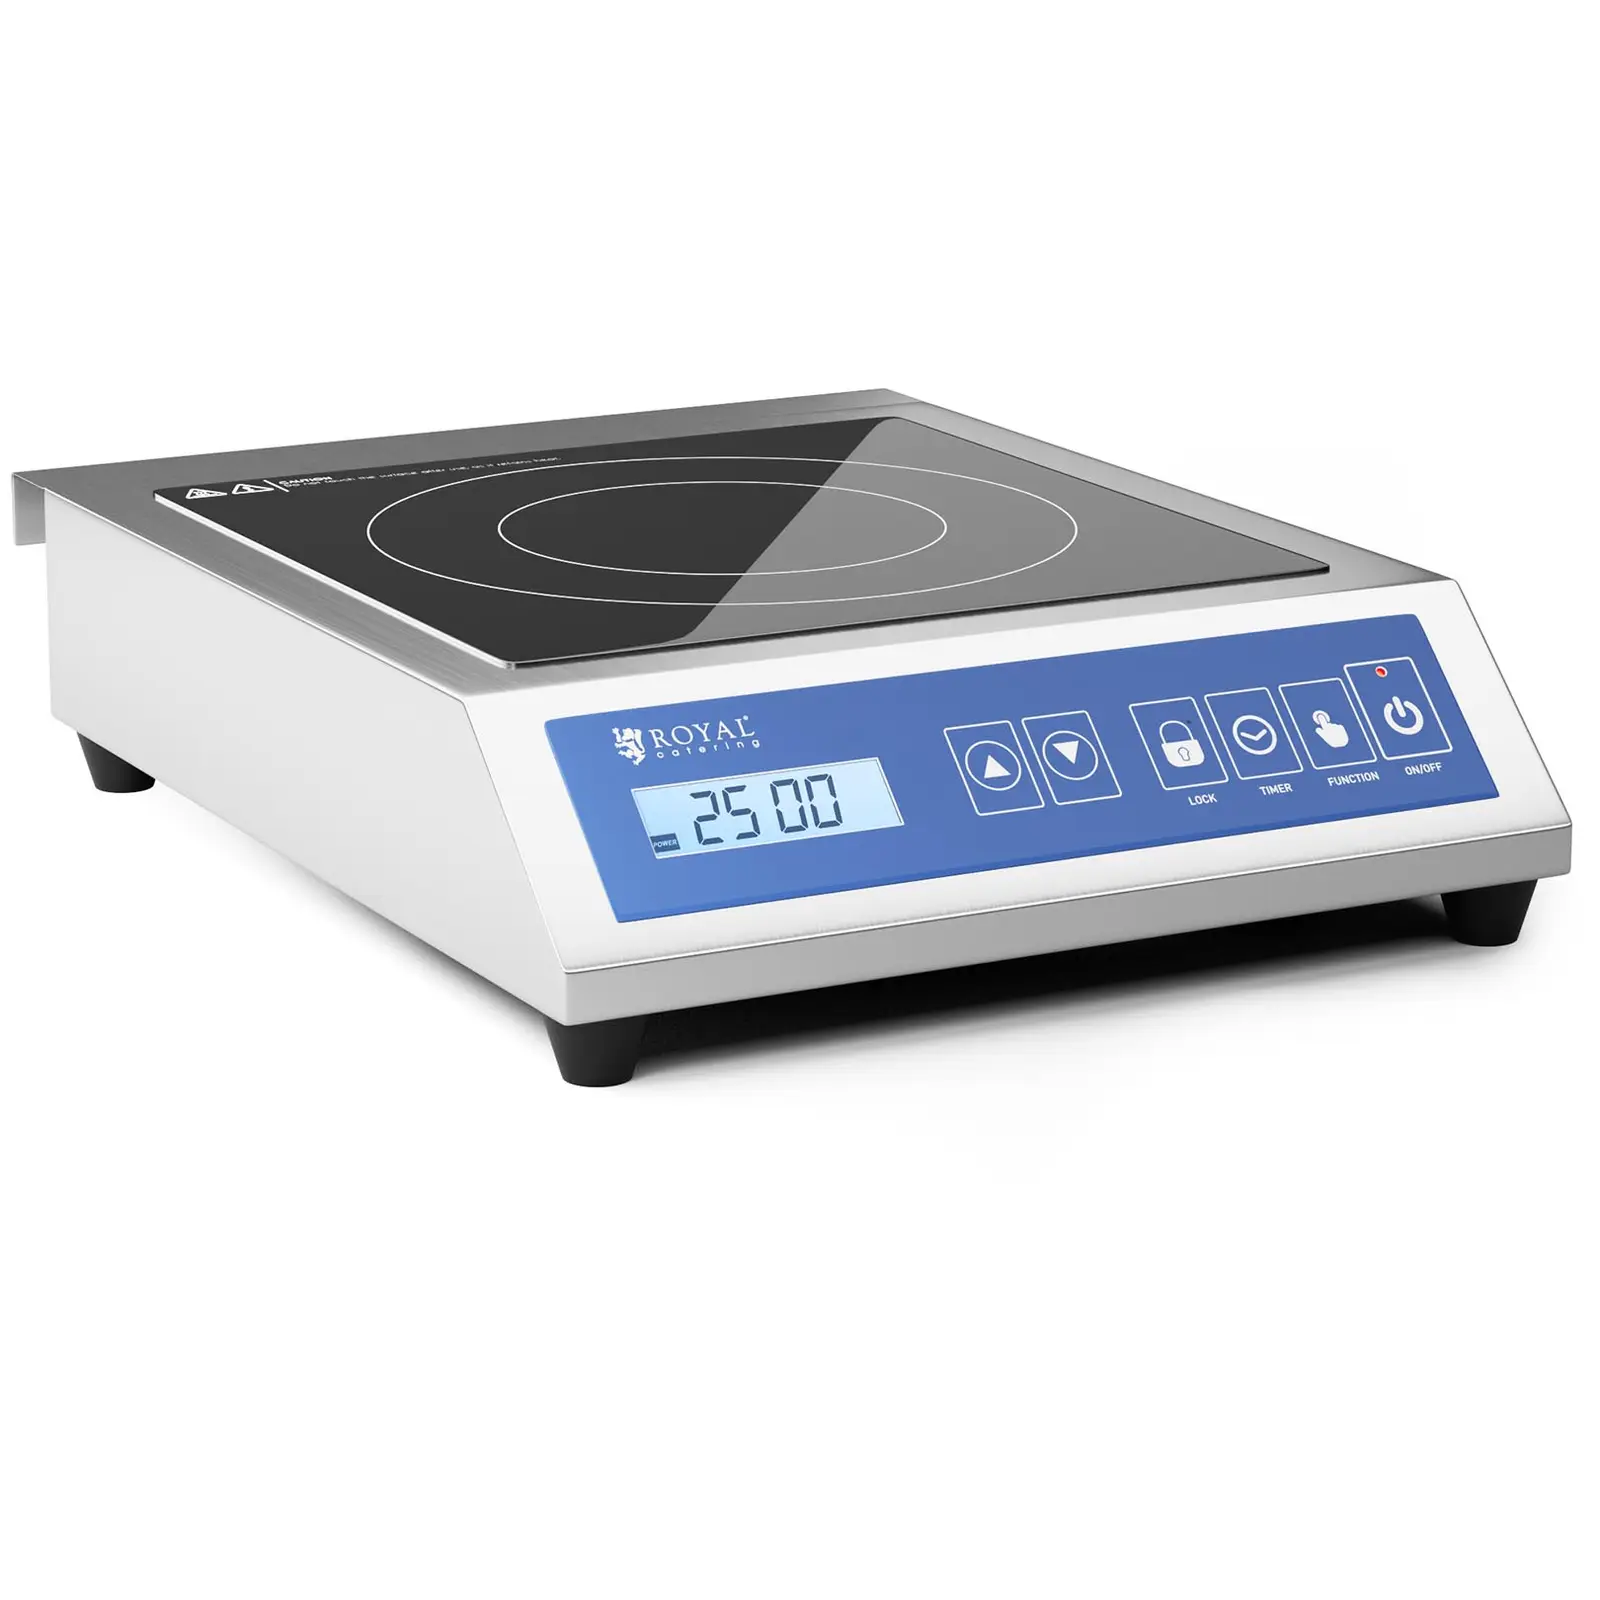 Indukcijsko kuhalo - 28 cm - 60 do 240 °C - zaslon osjetljiv na dodir - mjerač vremena